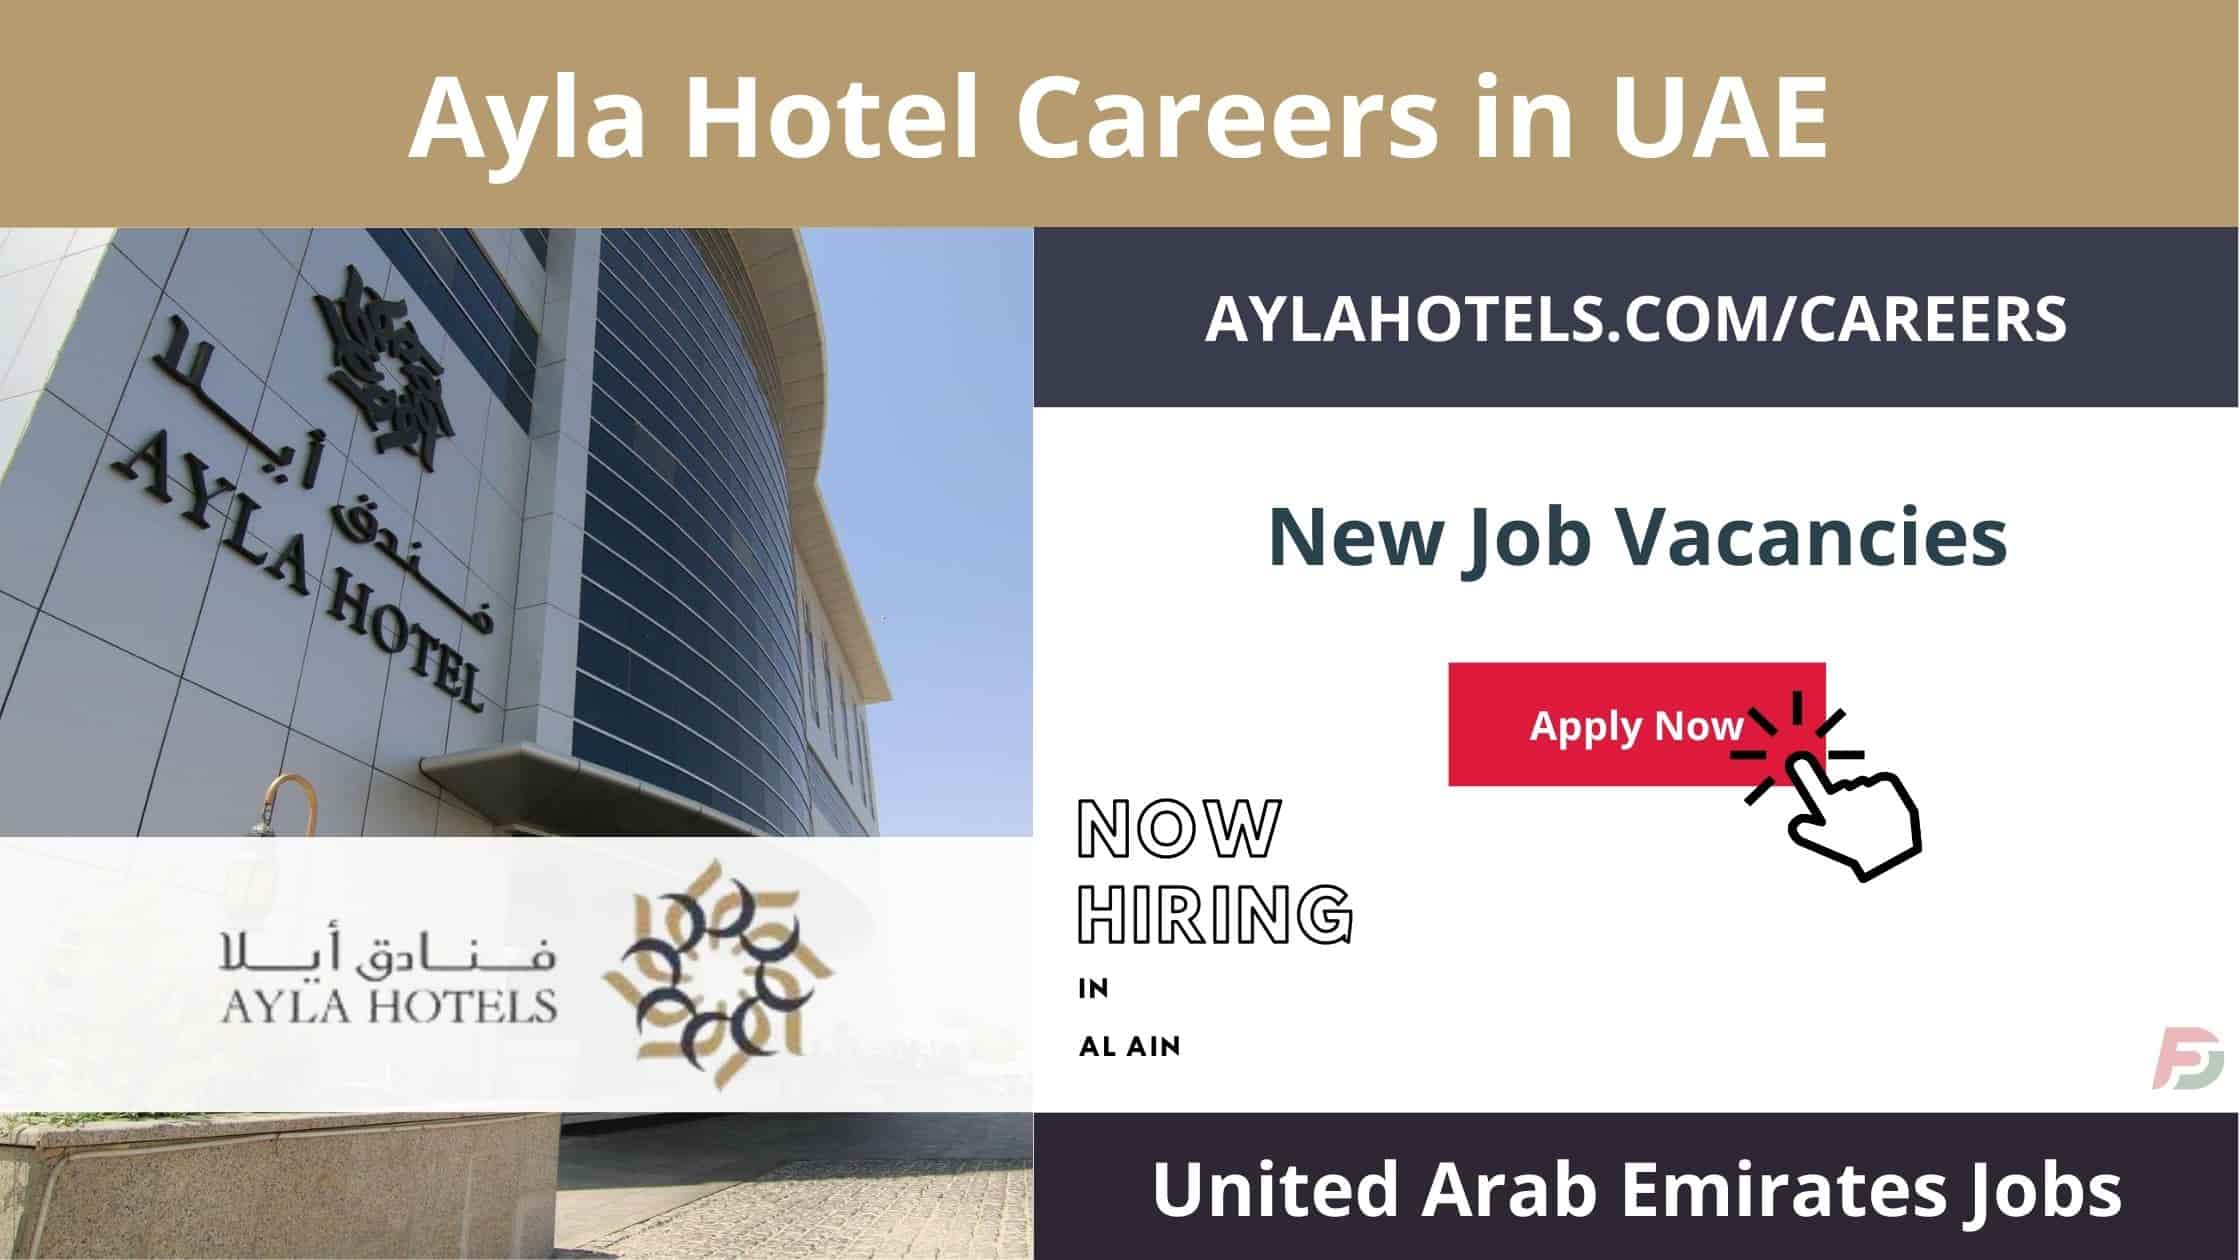 Ayla Hotel Careers in UAE